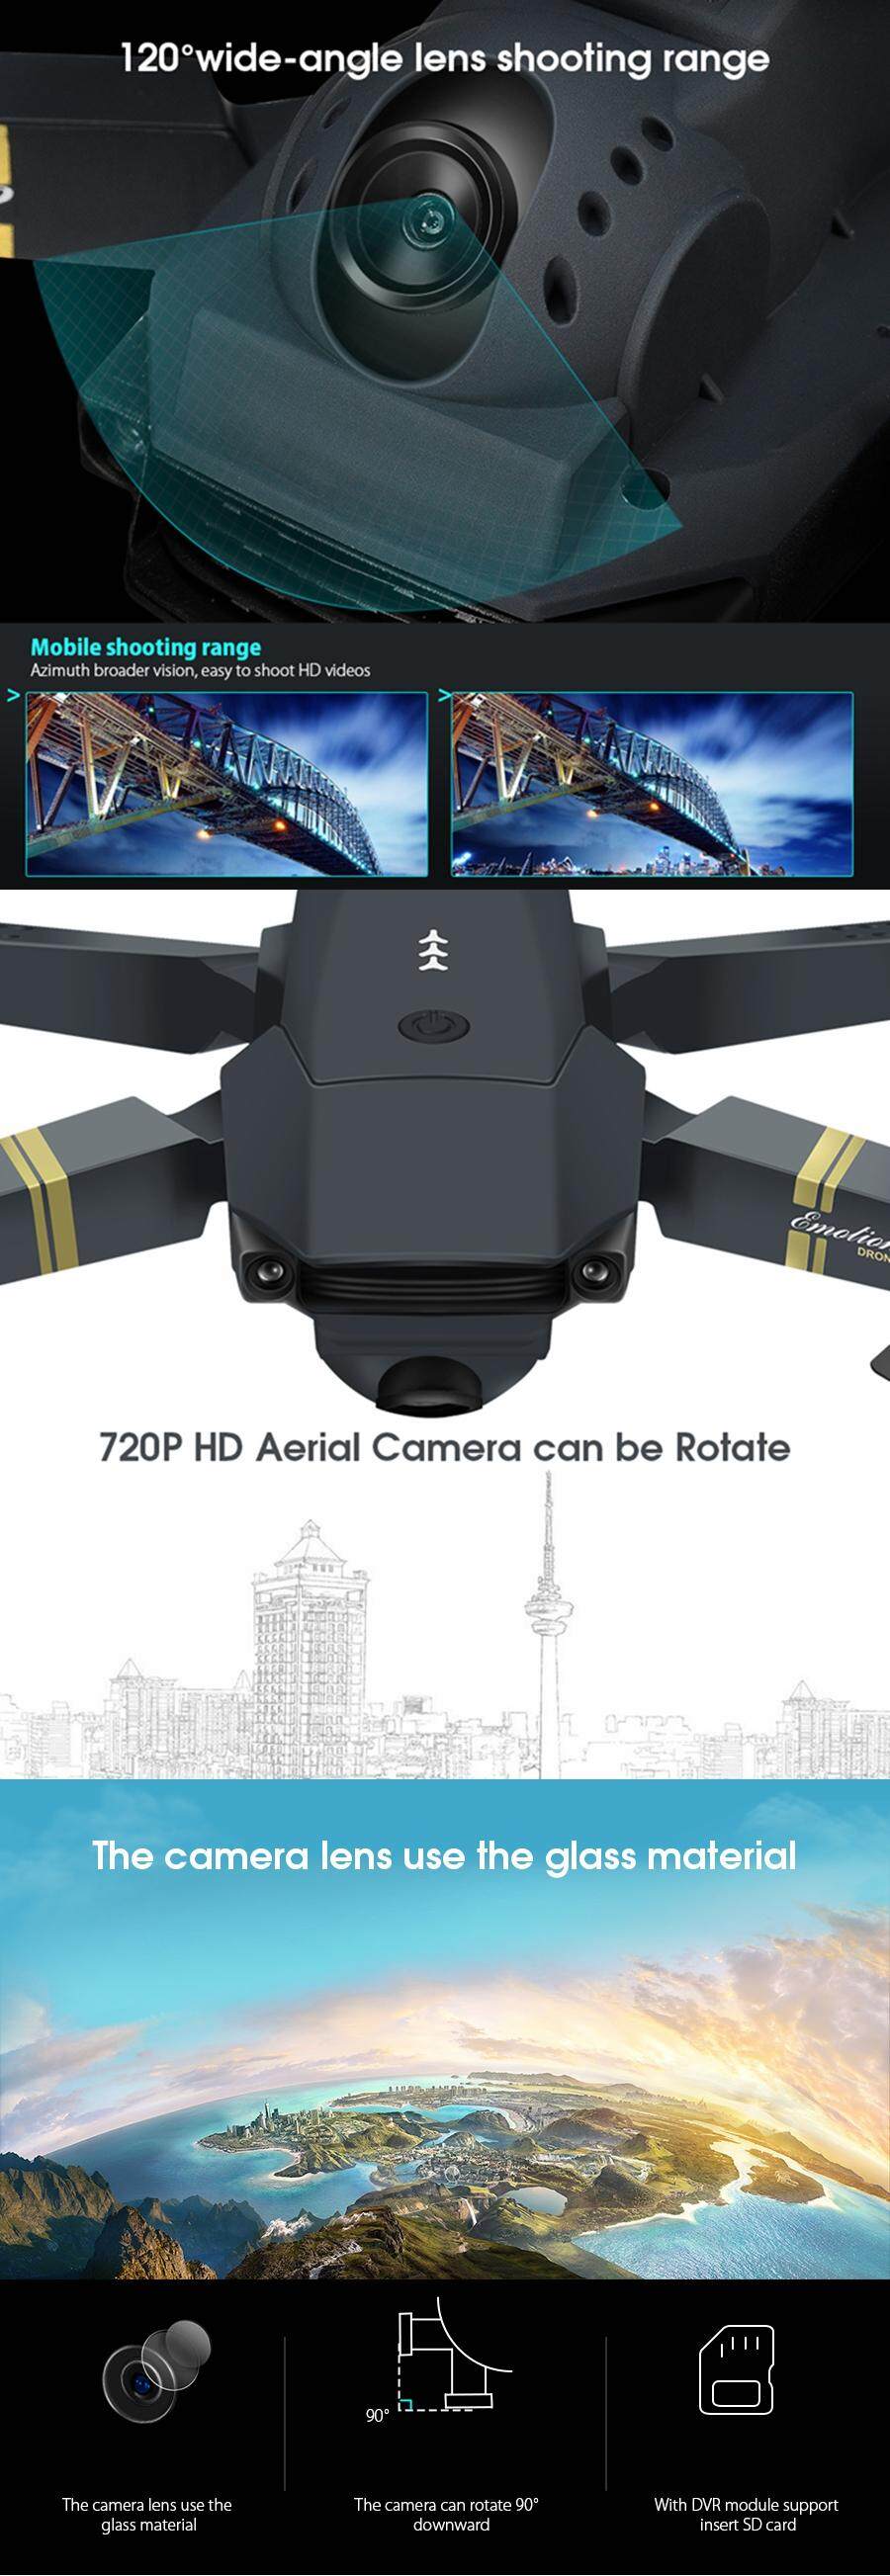 ข้อมูลประกอบของ (ส่งมาจากประเทศไทย)โดรนบังคับ E58 WIFI FPV With Wide Angle HD 1080P Camera โดรนติดกล้อง Hight Hold Mode Foldable Arm RC Qpter Drone โดรนบังคับ X Pro RTF Dron For Gift